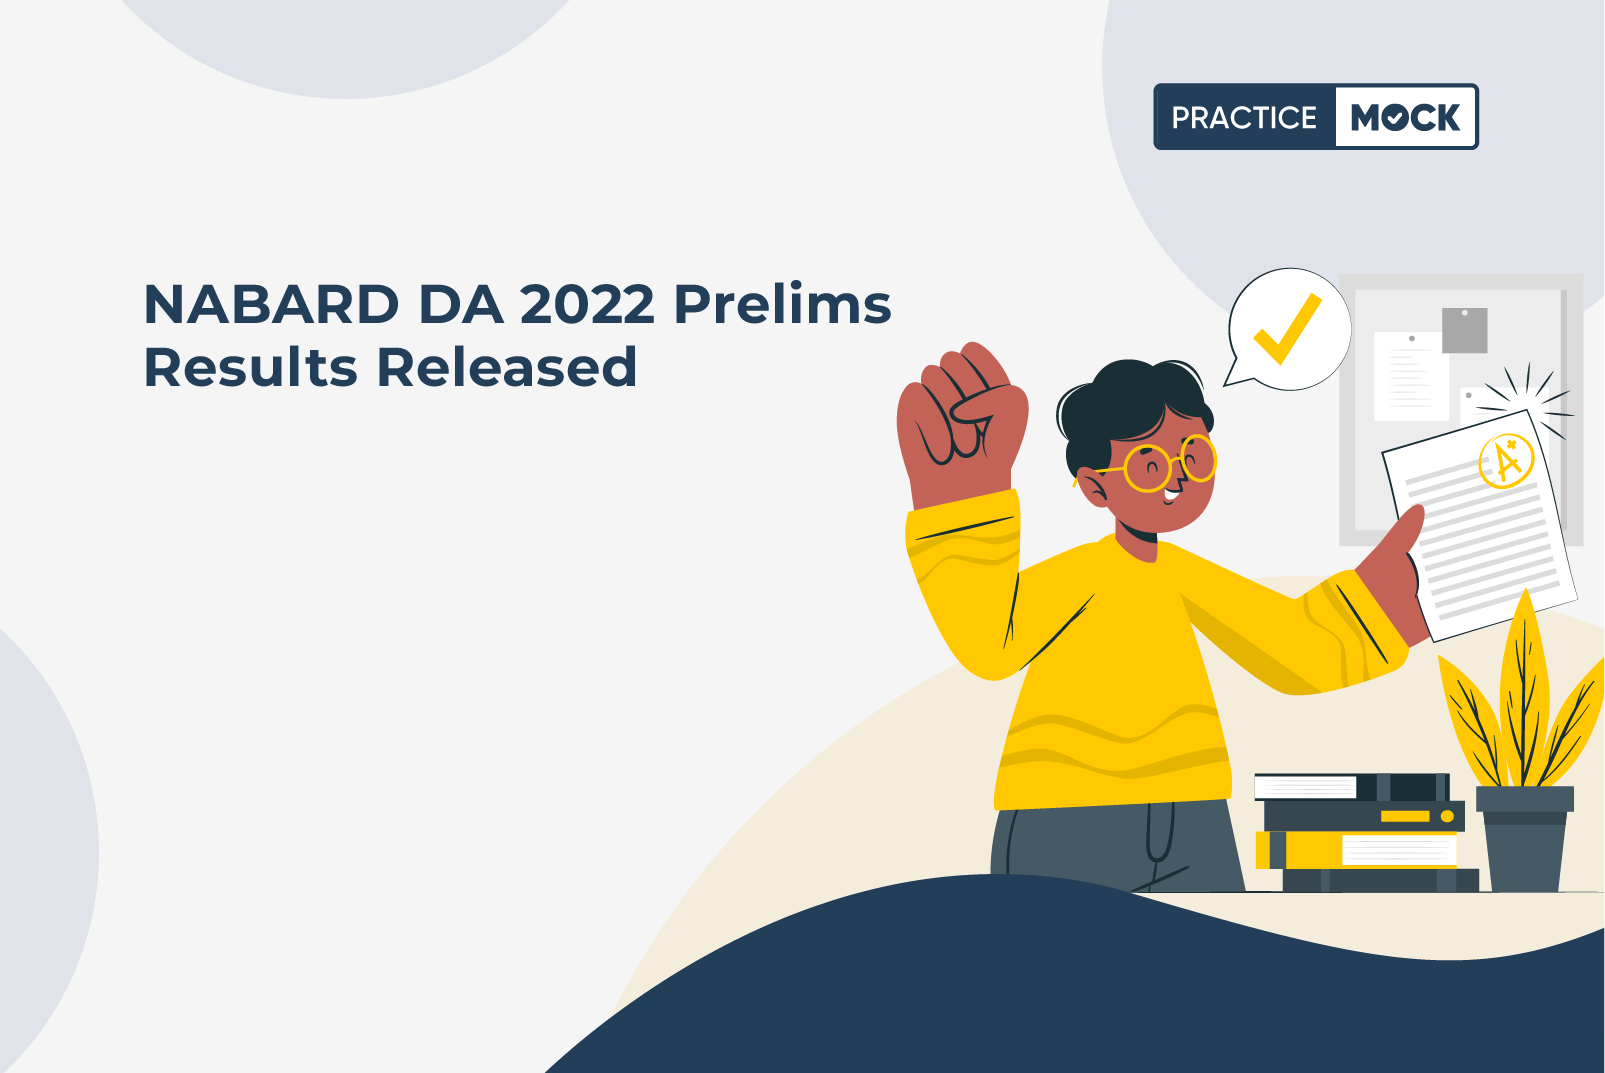 NABARD DA 2022 Prelims Results Released